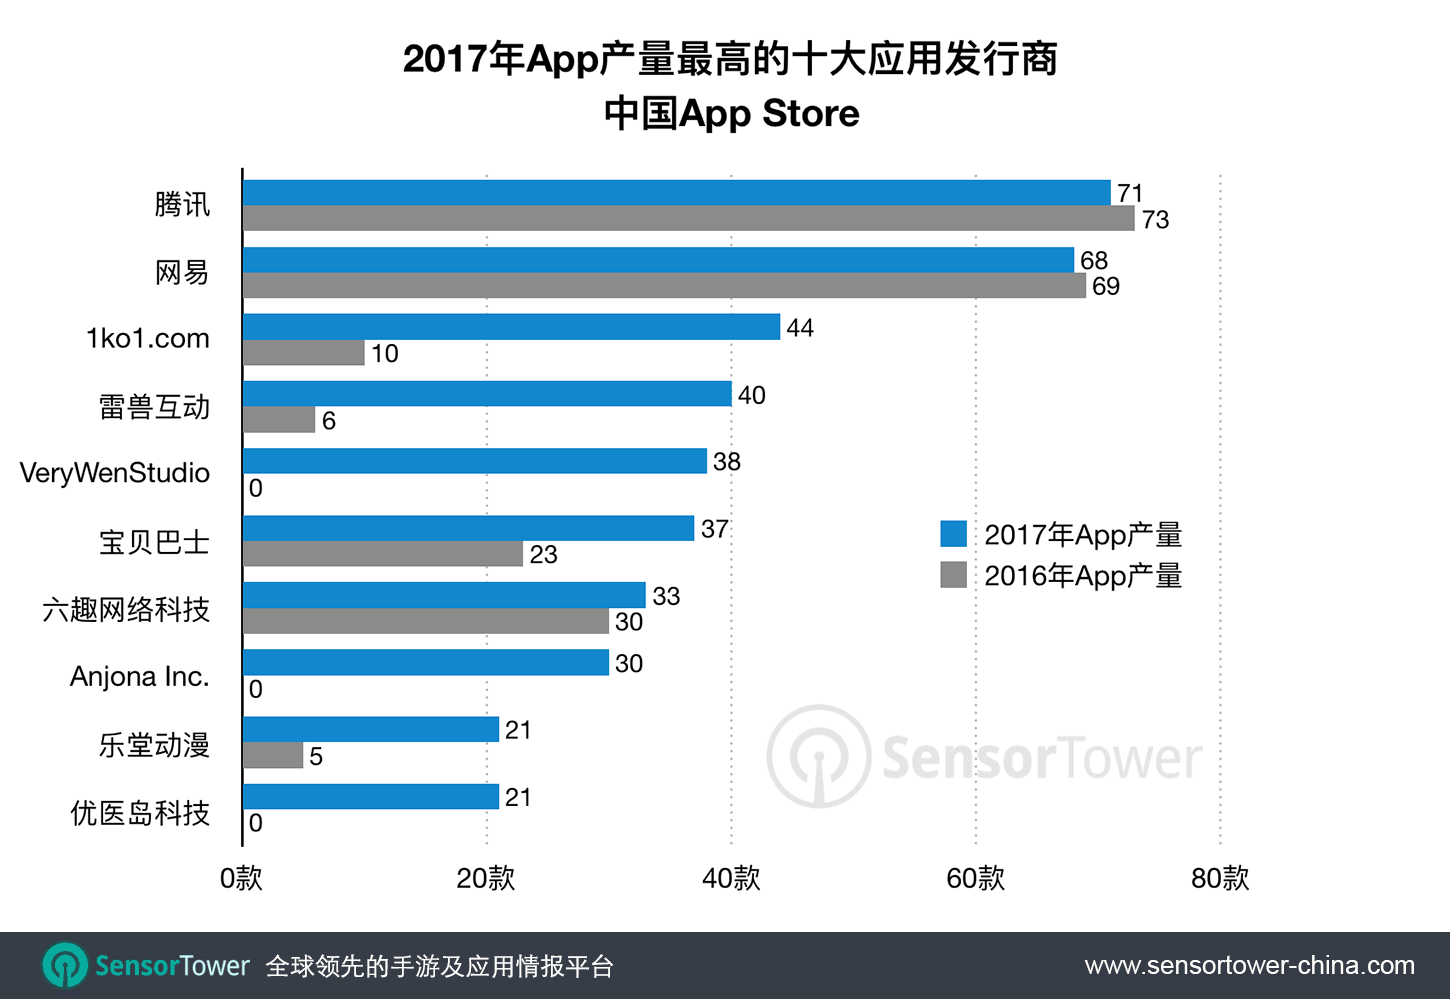 腾讯2017共推出71款应用，为中国iOS市场App产量最多发行商，网易紧随其后